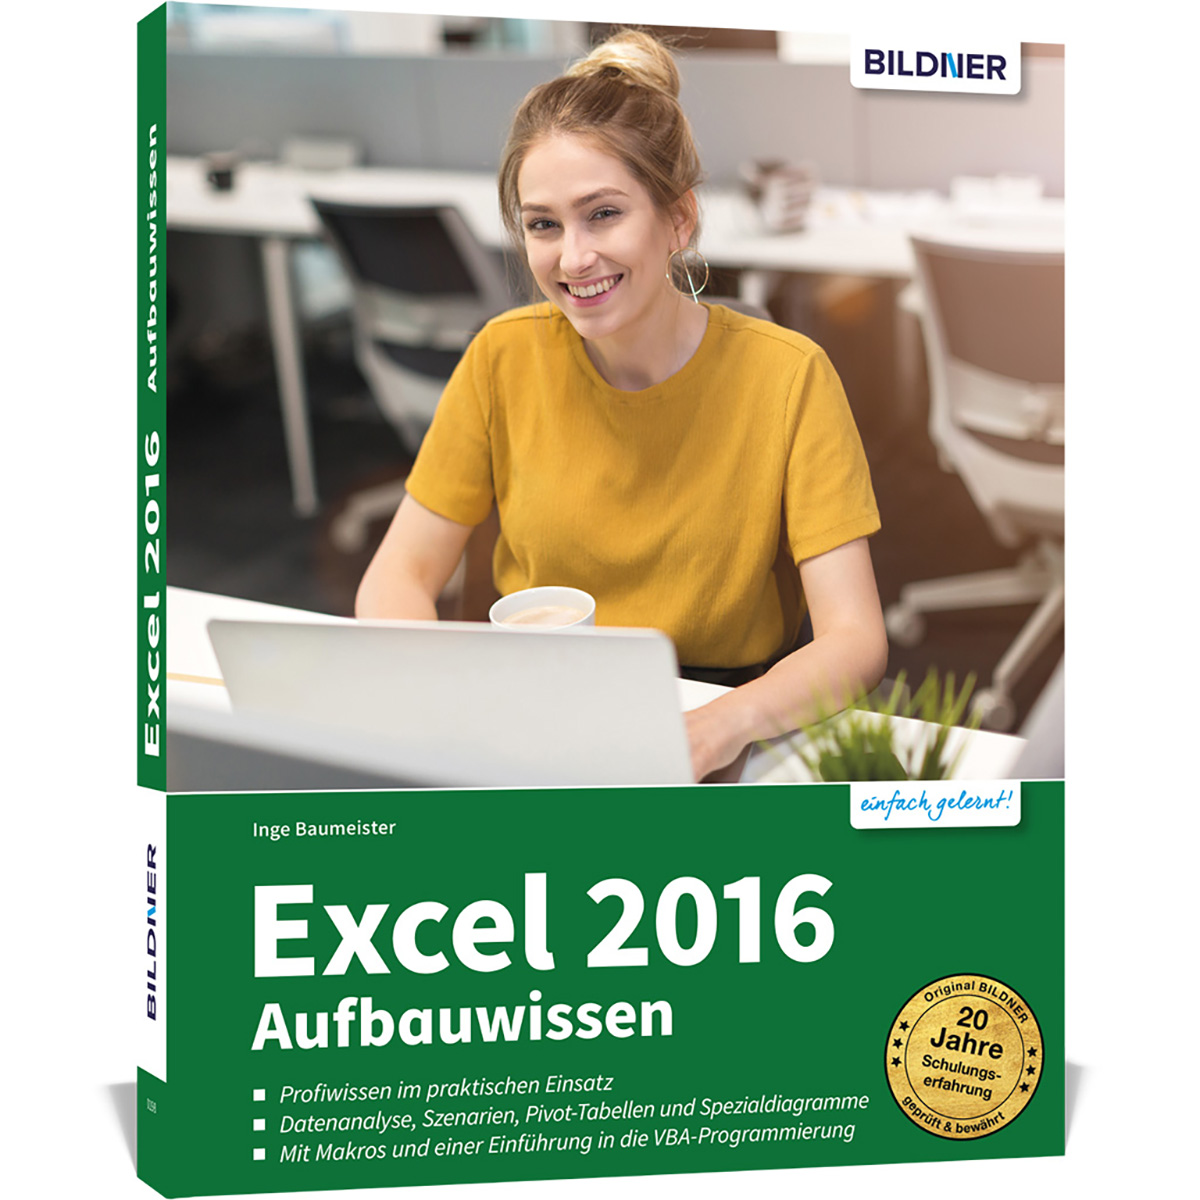 Excel 2016 Aufbauwissen - für Excel-Anwender Profiwissen